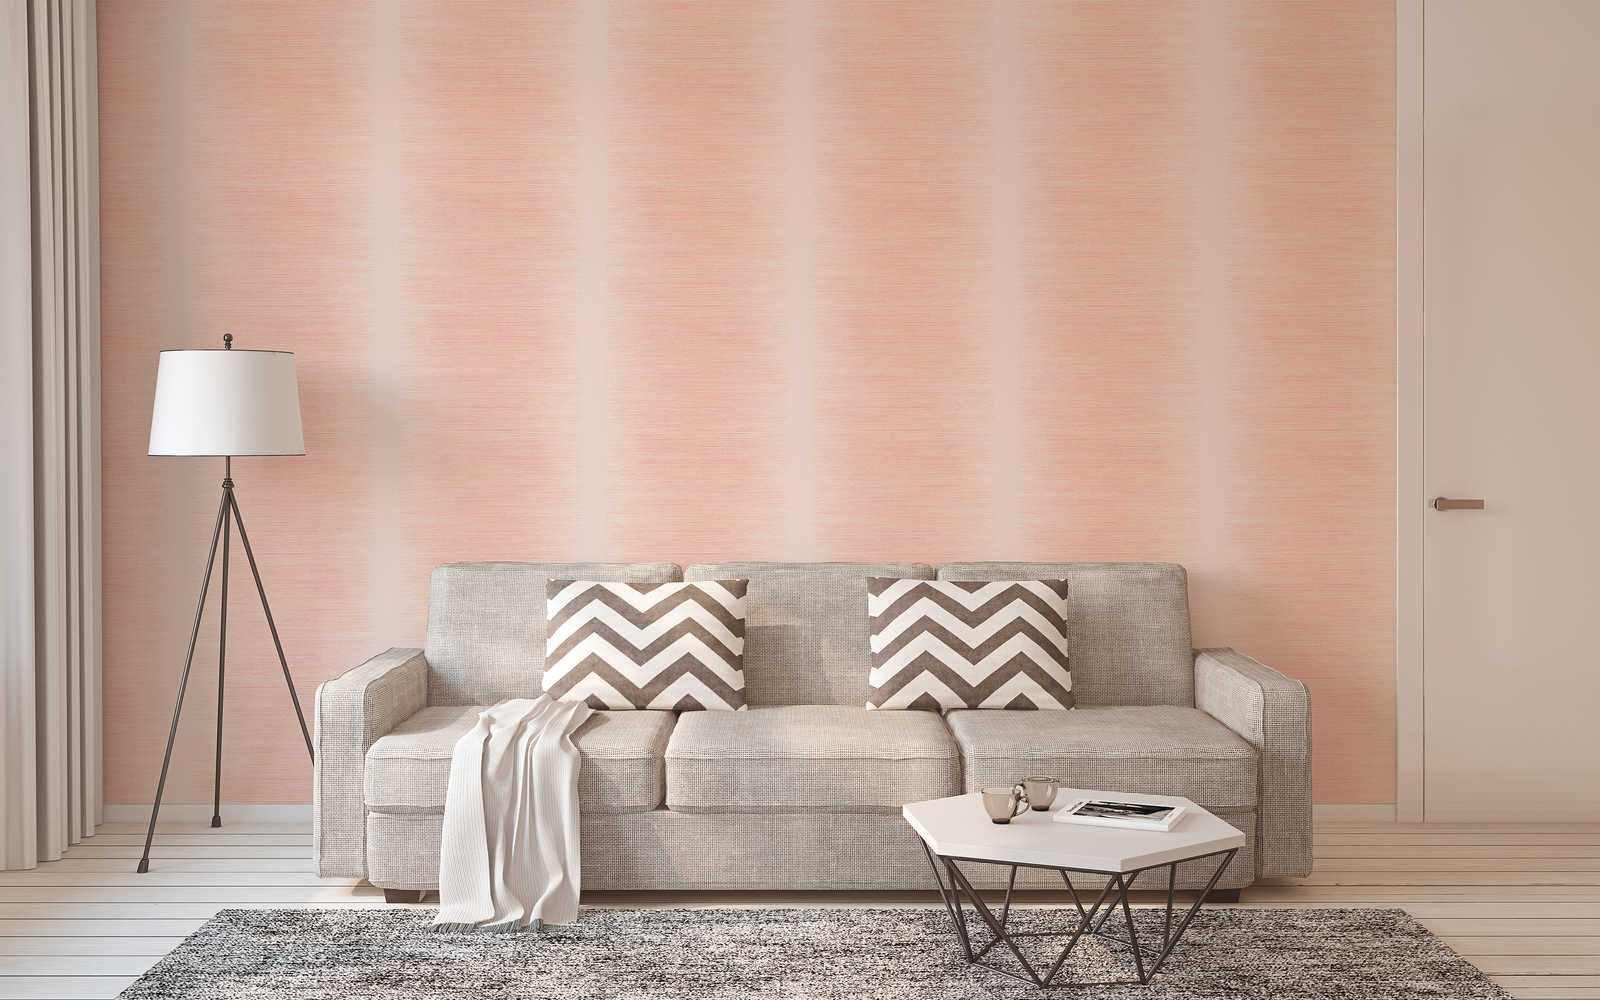             Scandinavian style wallpaper with dots design - pink, orange, beige
        